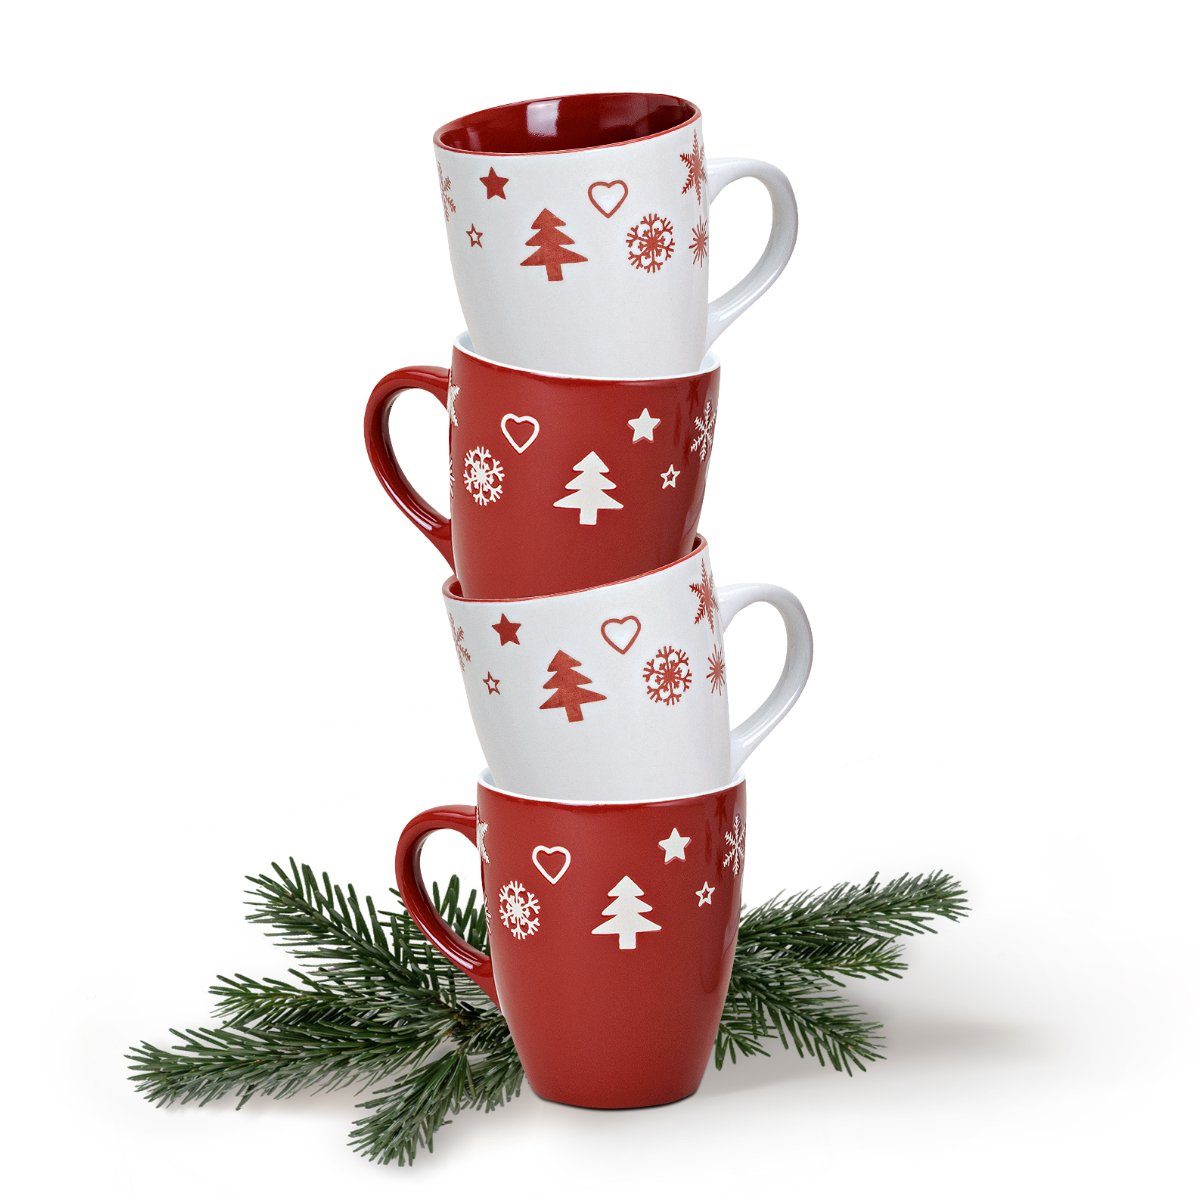 matches21 HOME & HOBBY Tasse Weihnachtstassen 36 Stk. rot weiß, Keramik 36er Set rot